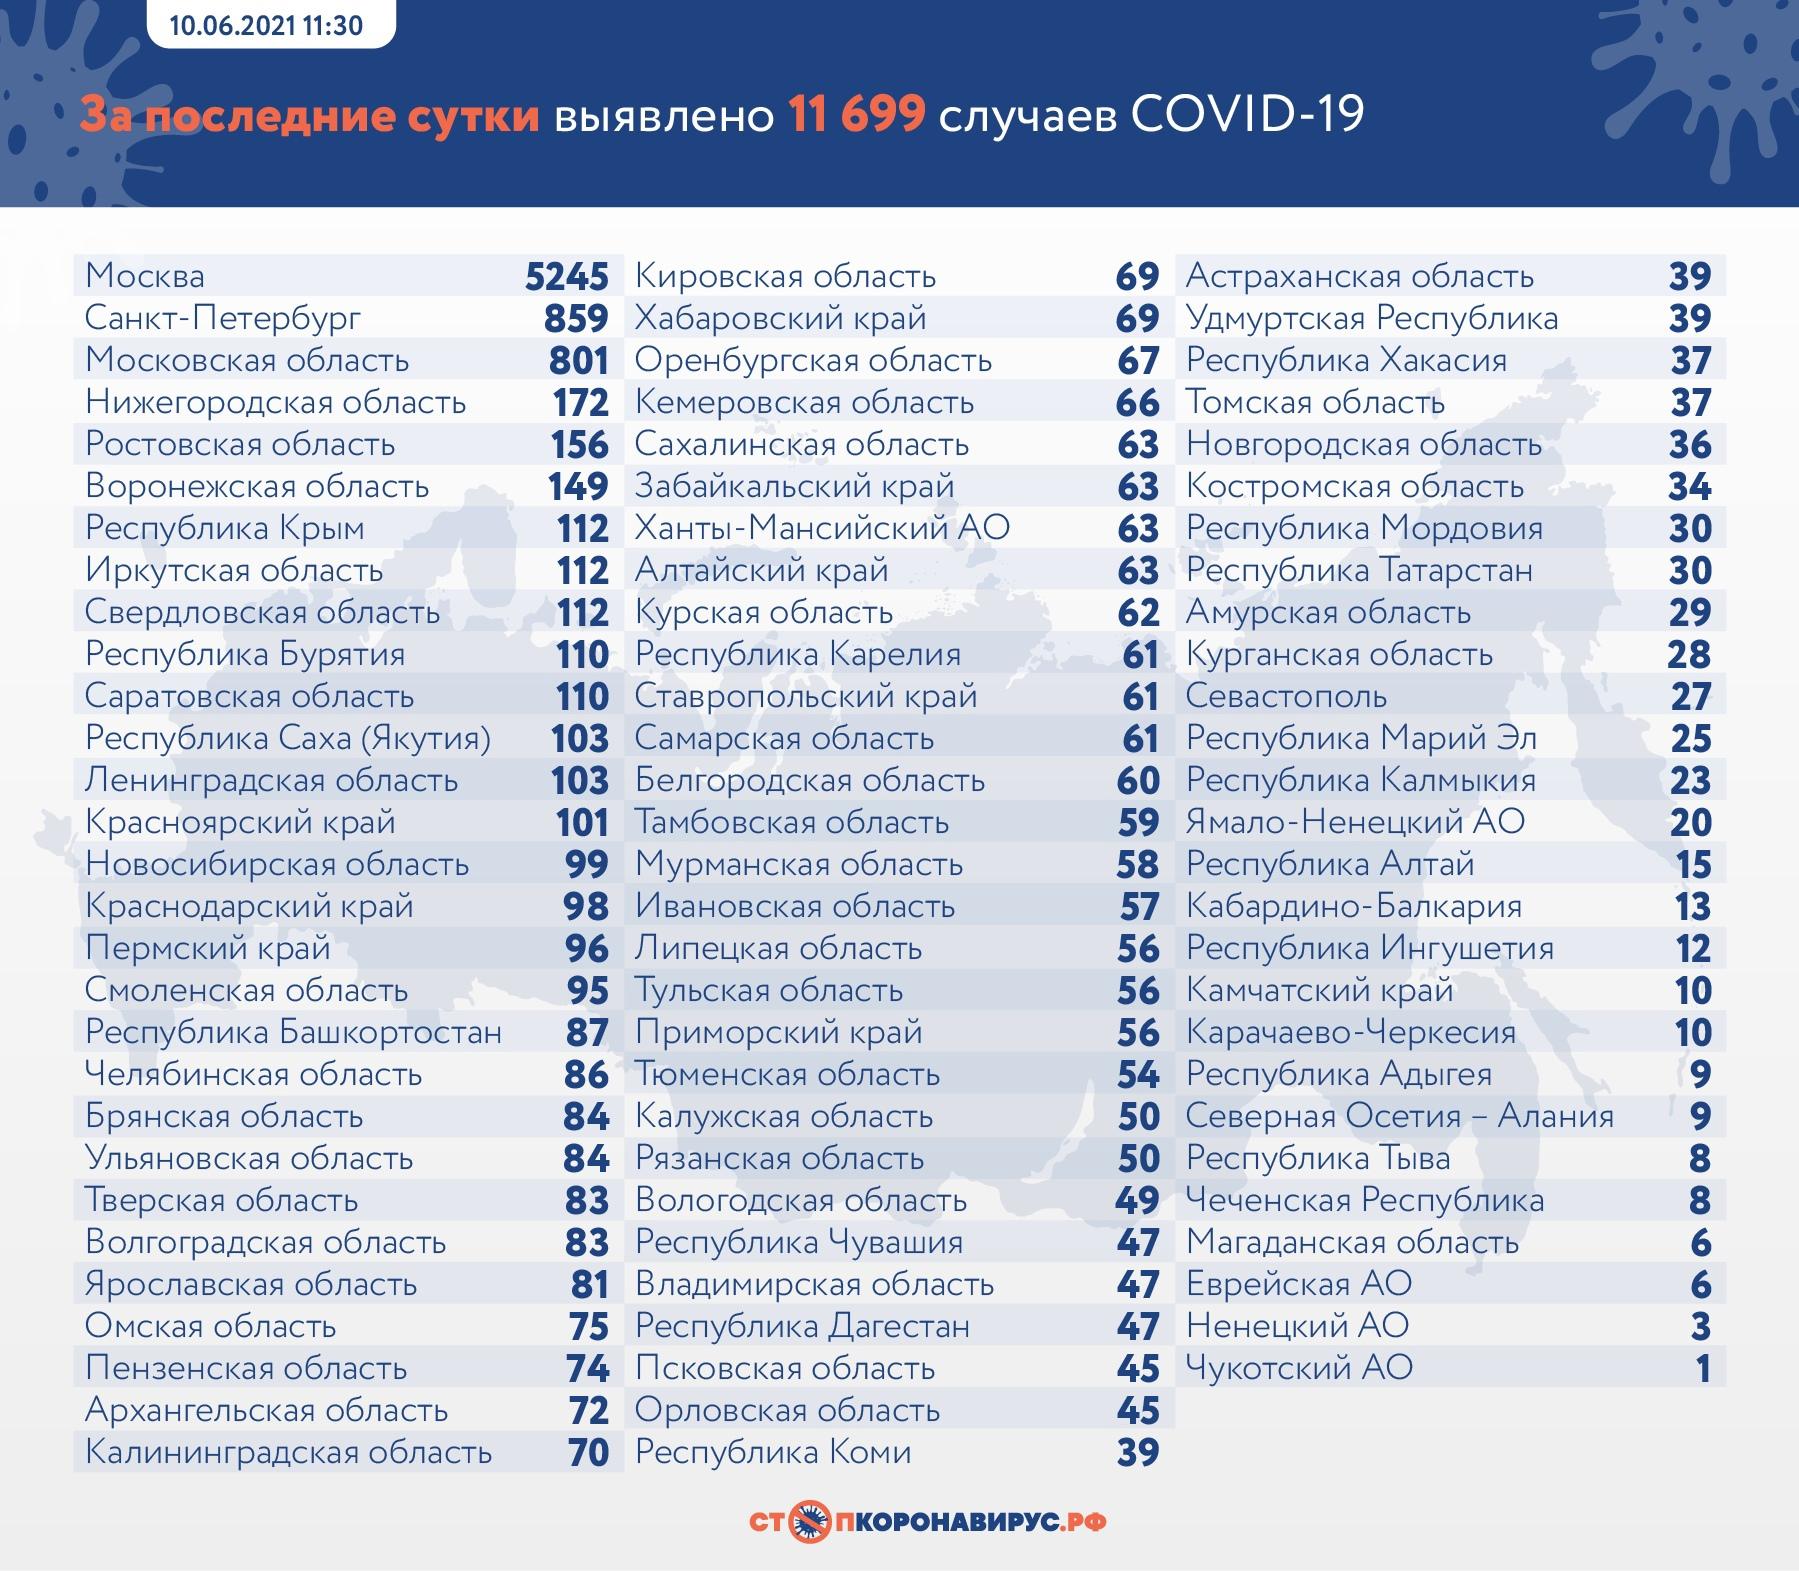 Фото 11 699 человек заразились коронавирусом в России за сутки 2